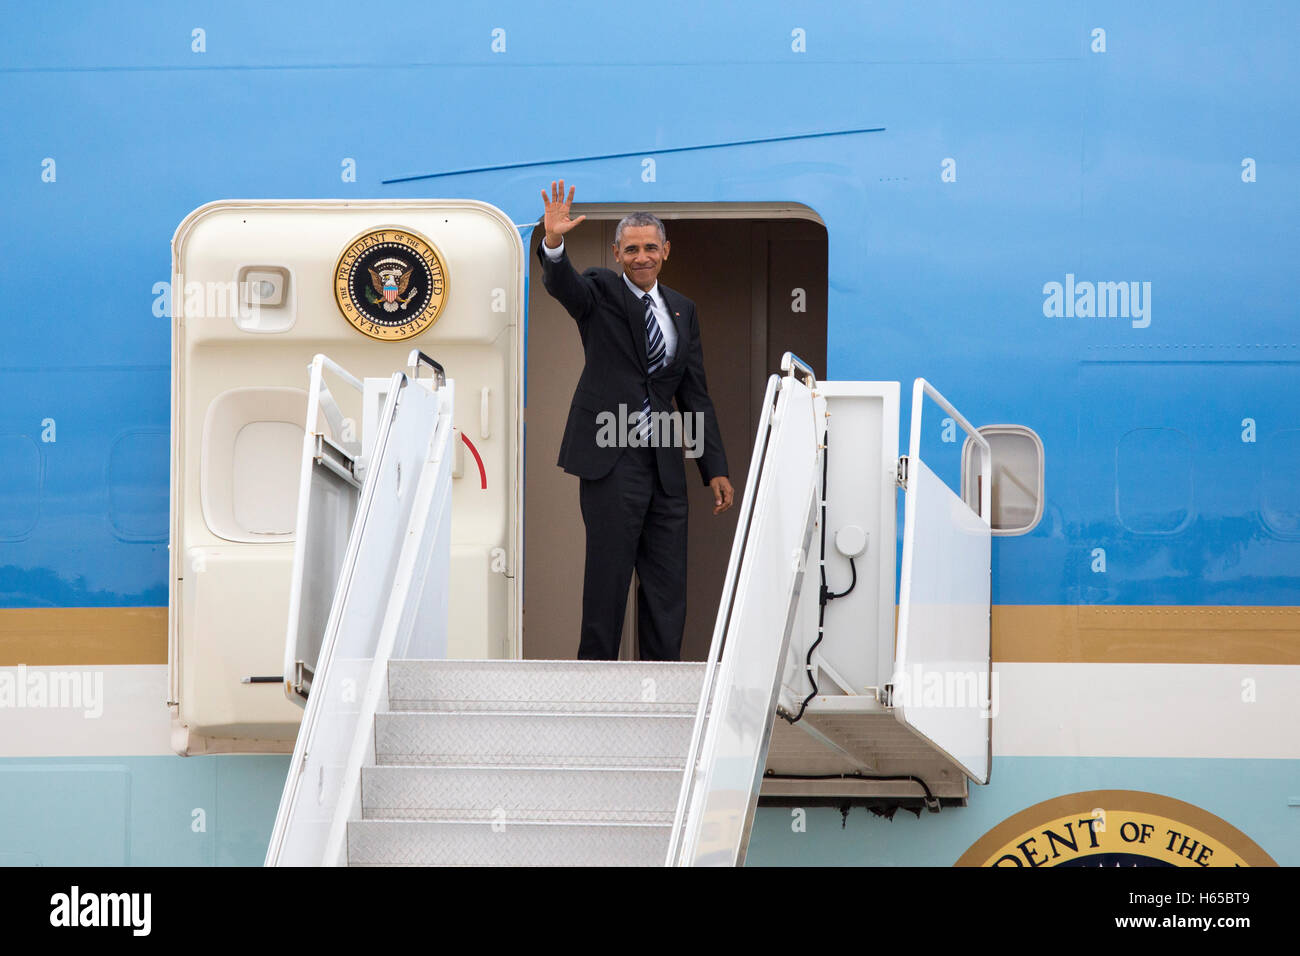 San Diego, Californie, USA. 24 Oct, 2016. Le président Barack Obama de quitter San Diego sur l'Air Force One de MCAS Base Mirmar le 24 octobre 2016 à San Diego, Californie. Crédit : l'accès Photo/Alamy Live News Banque D'Images